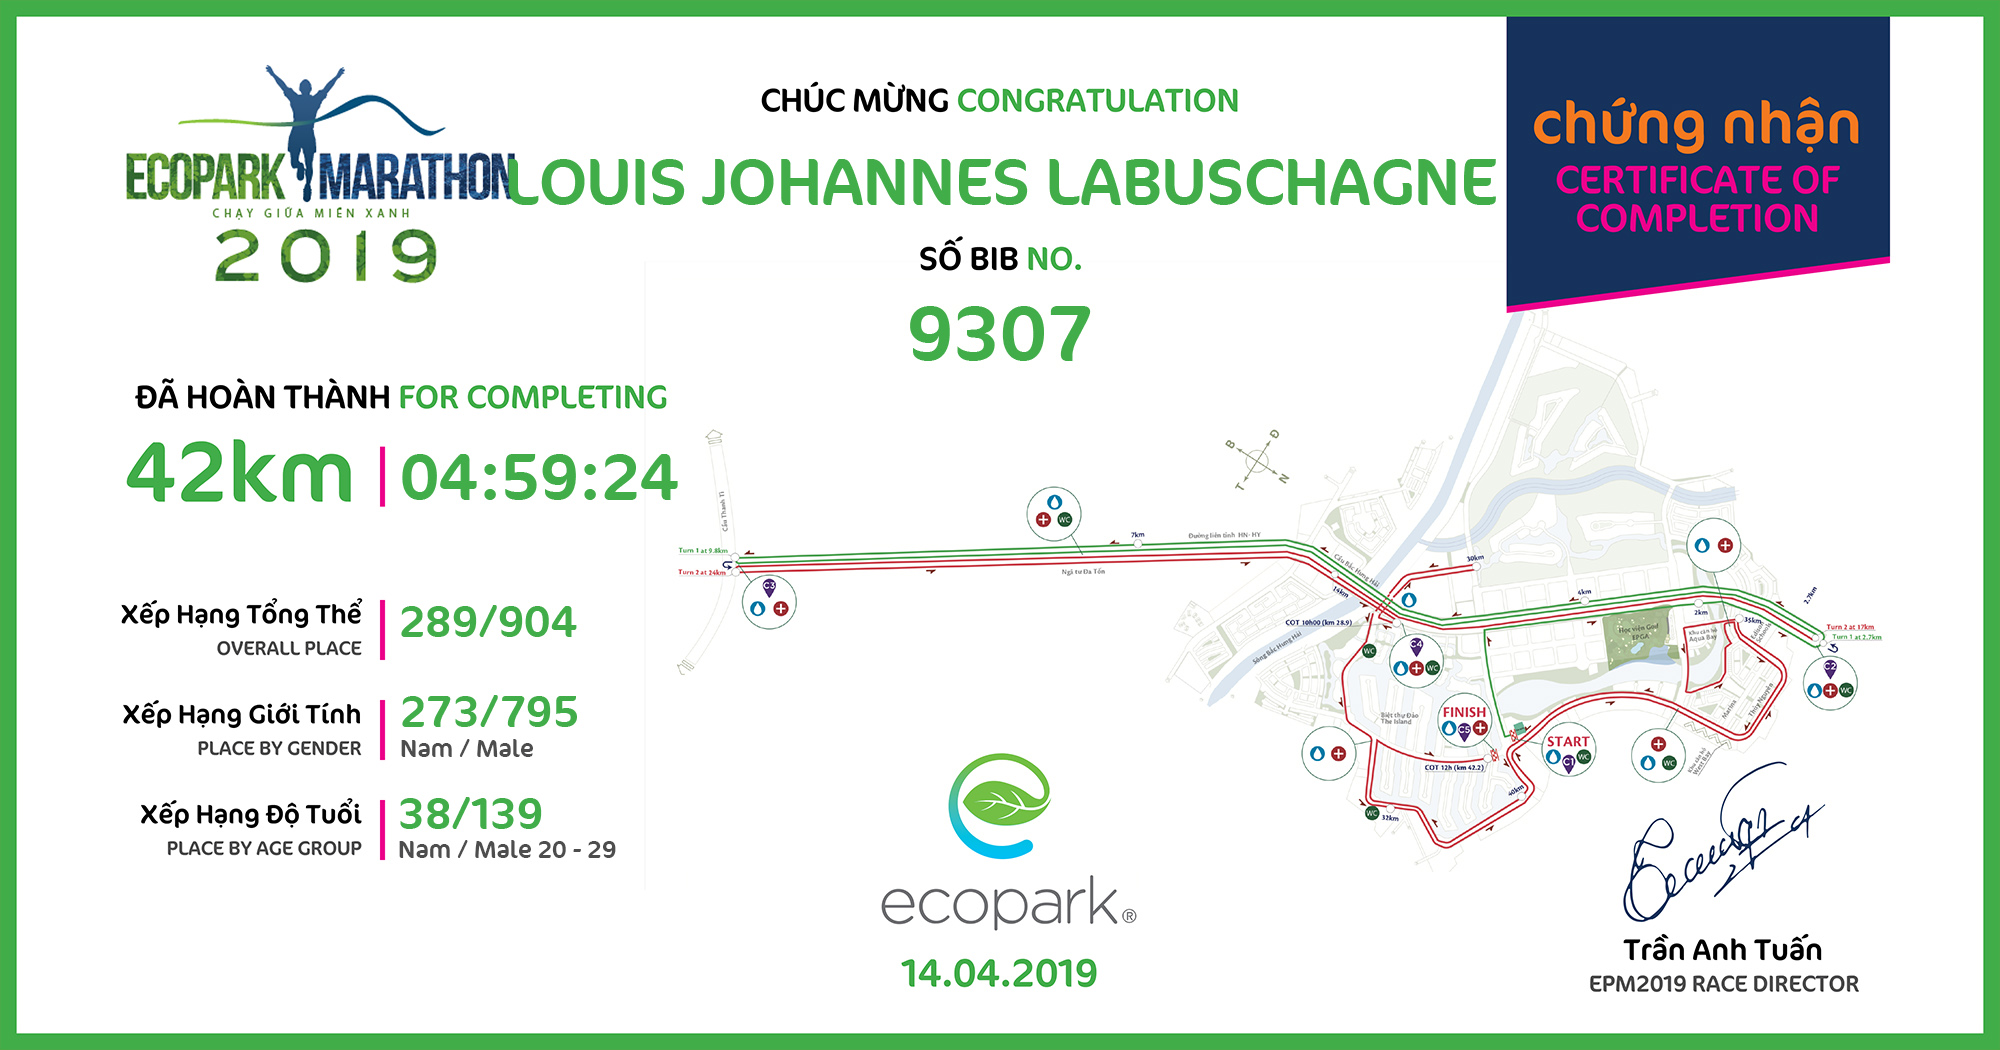 9307 - LOUIS JOHANNES LABUSCHAGNE